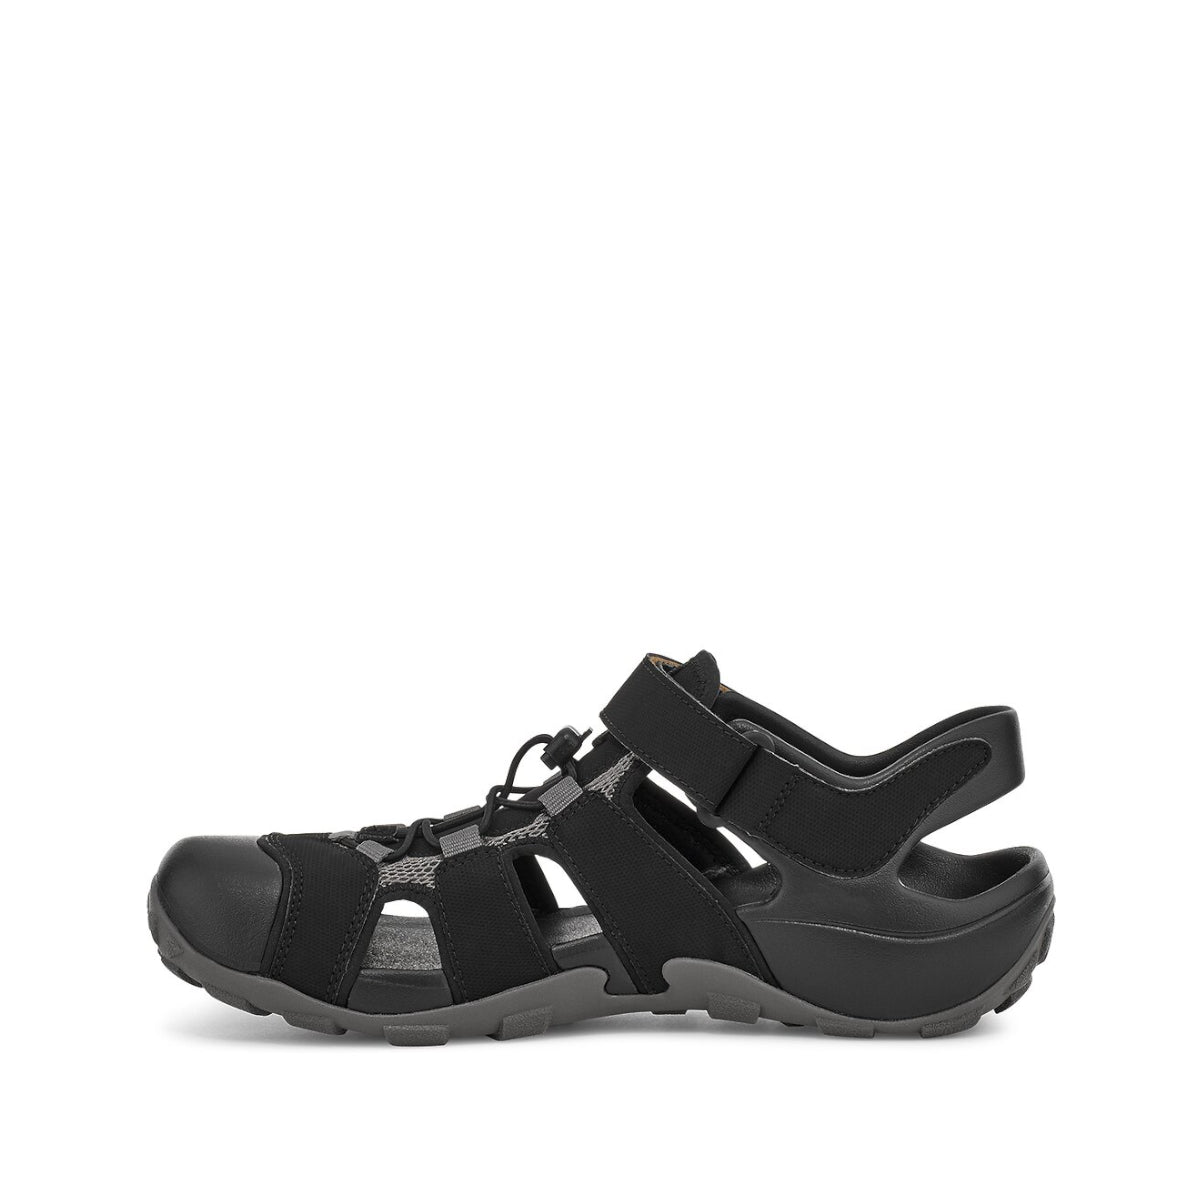 M Flintwood - shoe&amp;me - Teva - Sandal - Eco Collection, Mens, Sandal, Shoes, Summer 21, Vegan